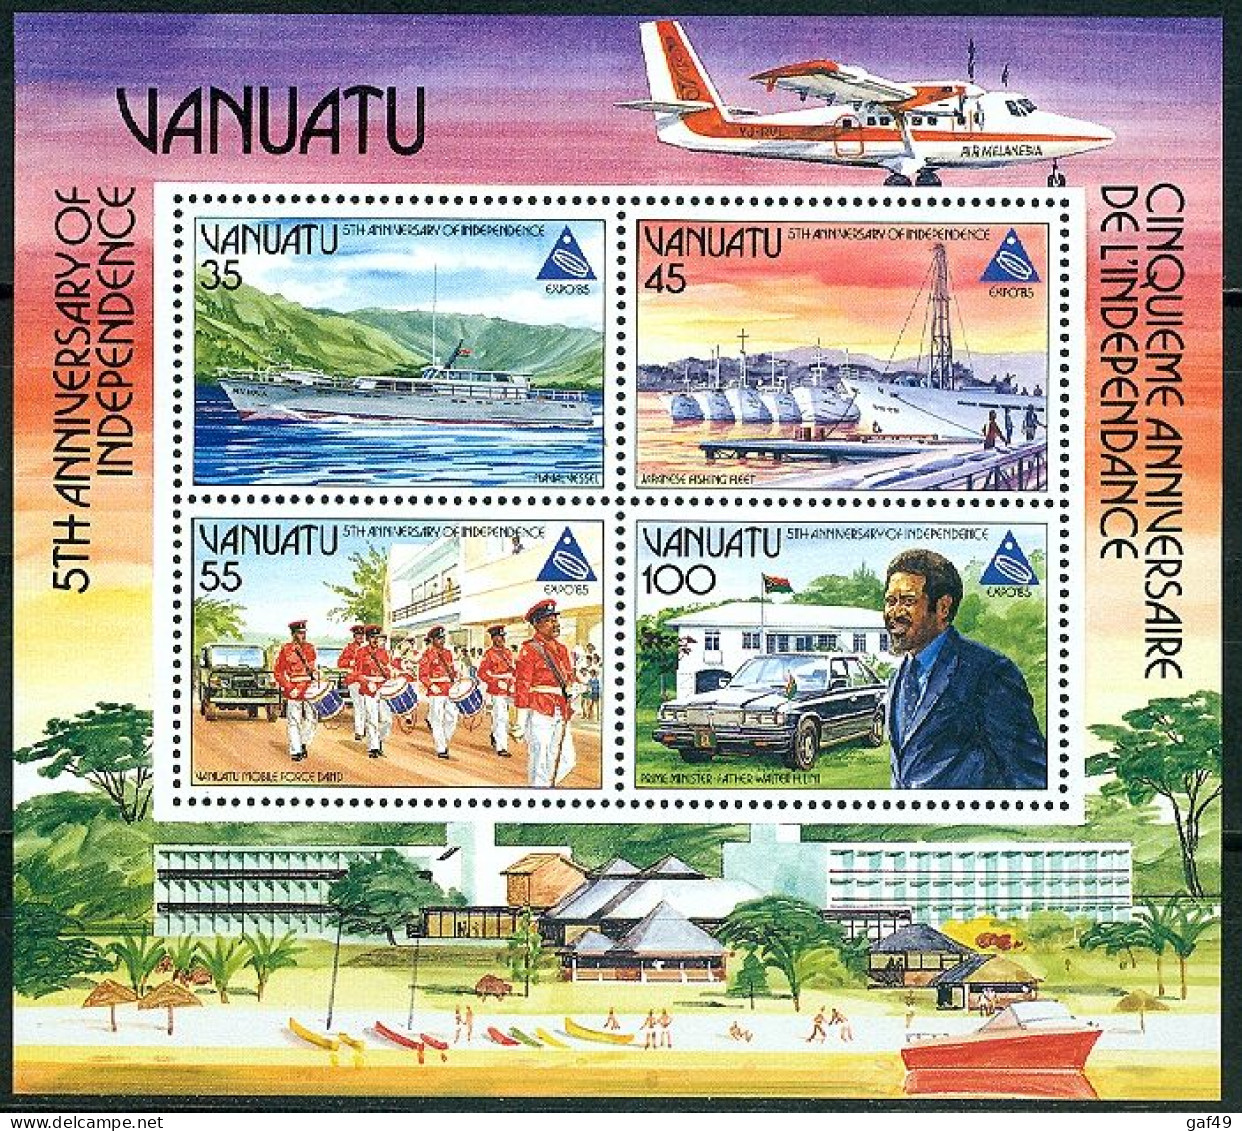 Vanuatu, 5e Anniversaire De L'indépendance, Bloc Feuillet N° 8 Y&T Neufs Sans Charnière - Vanuatu (1980-...)